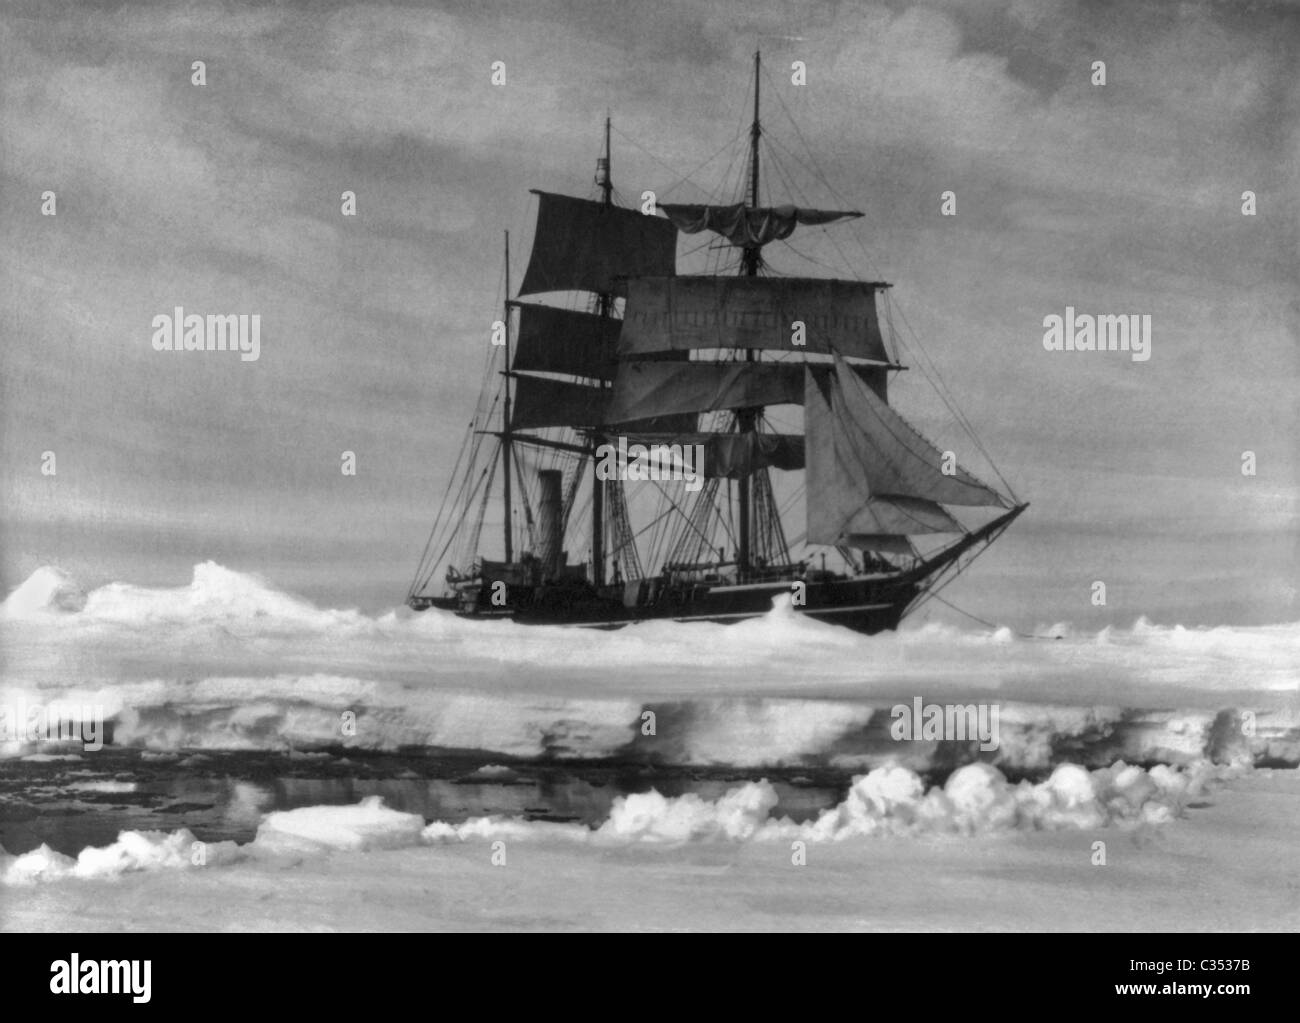 Robert Falcon Scotts Schiff "Terra Nova" stecken in schweren Packeis in der Antarktis während der Terra-Nova-Expedition 1910-1913. Stockfoto